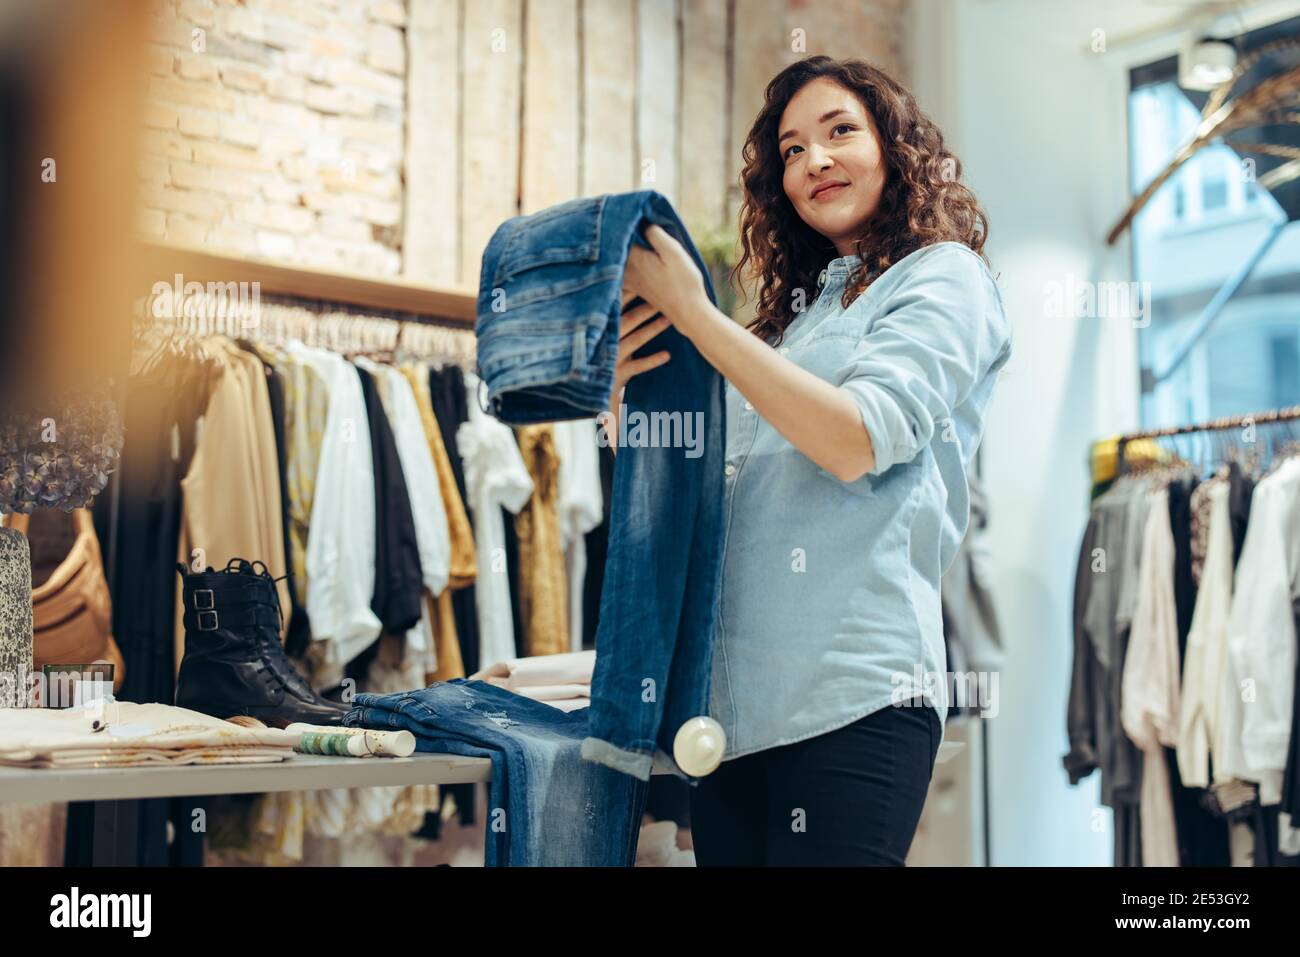 Frau hält Jeans und schaut weg, während sie im Geschäft einkaufen. Frauen einkaufen im Bekleidungsgeschäft. Stockfoto